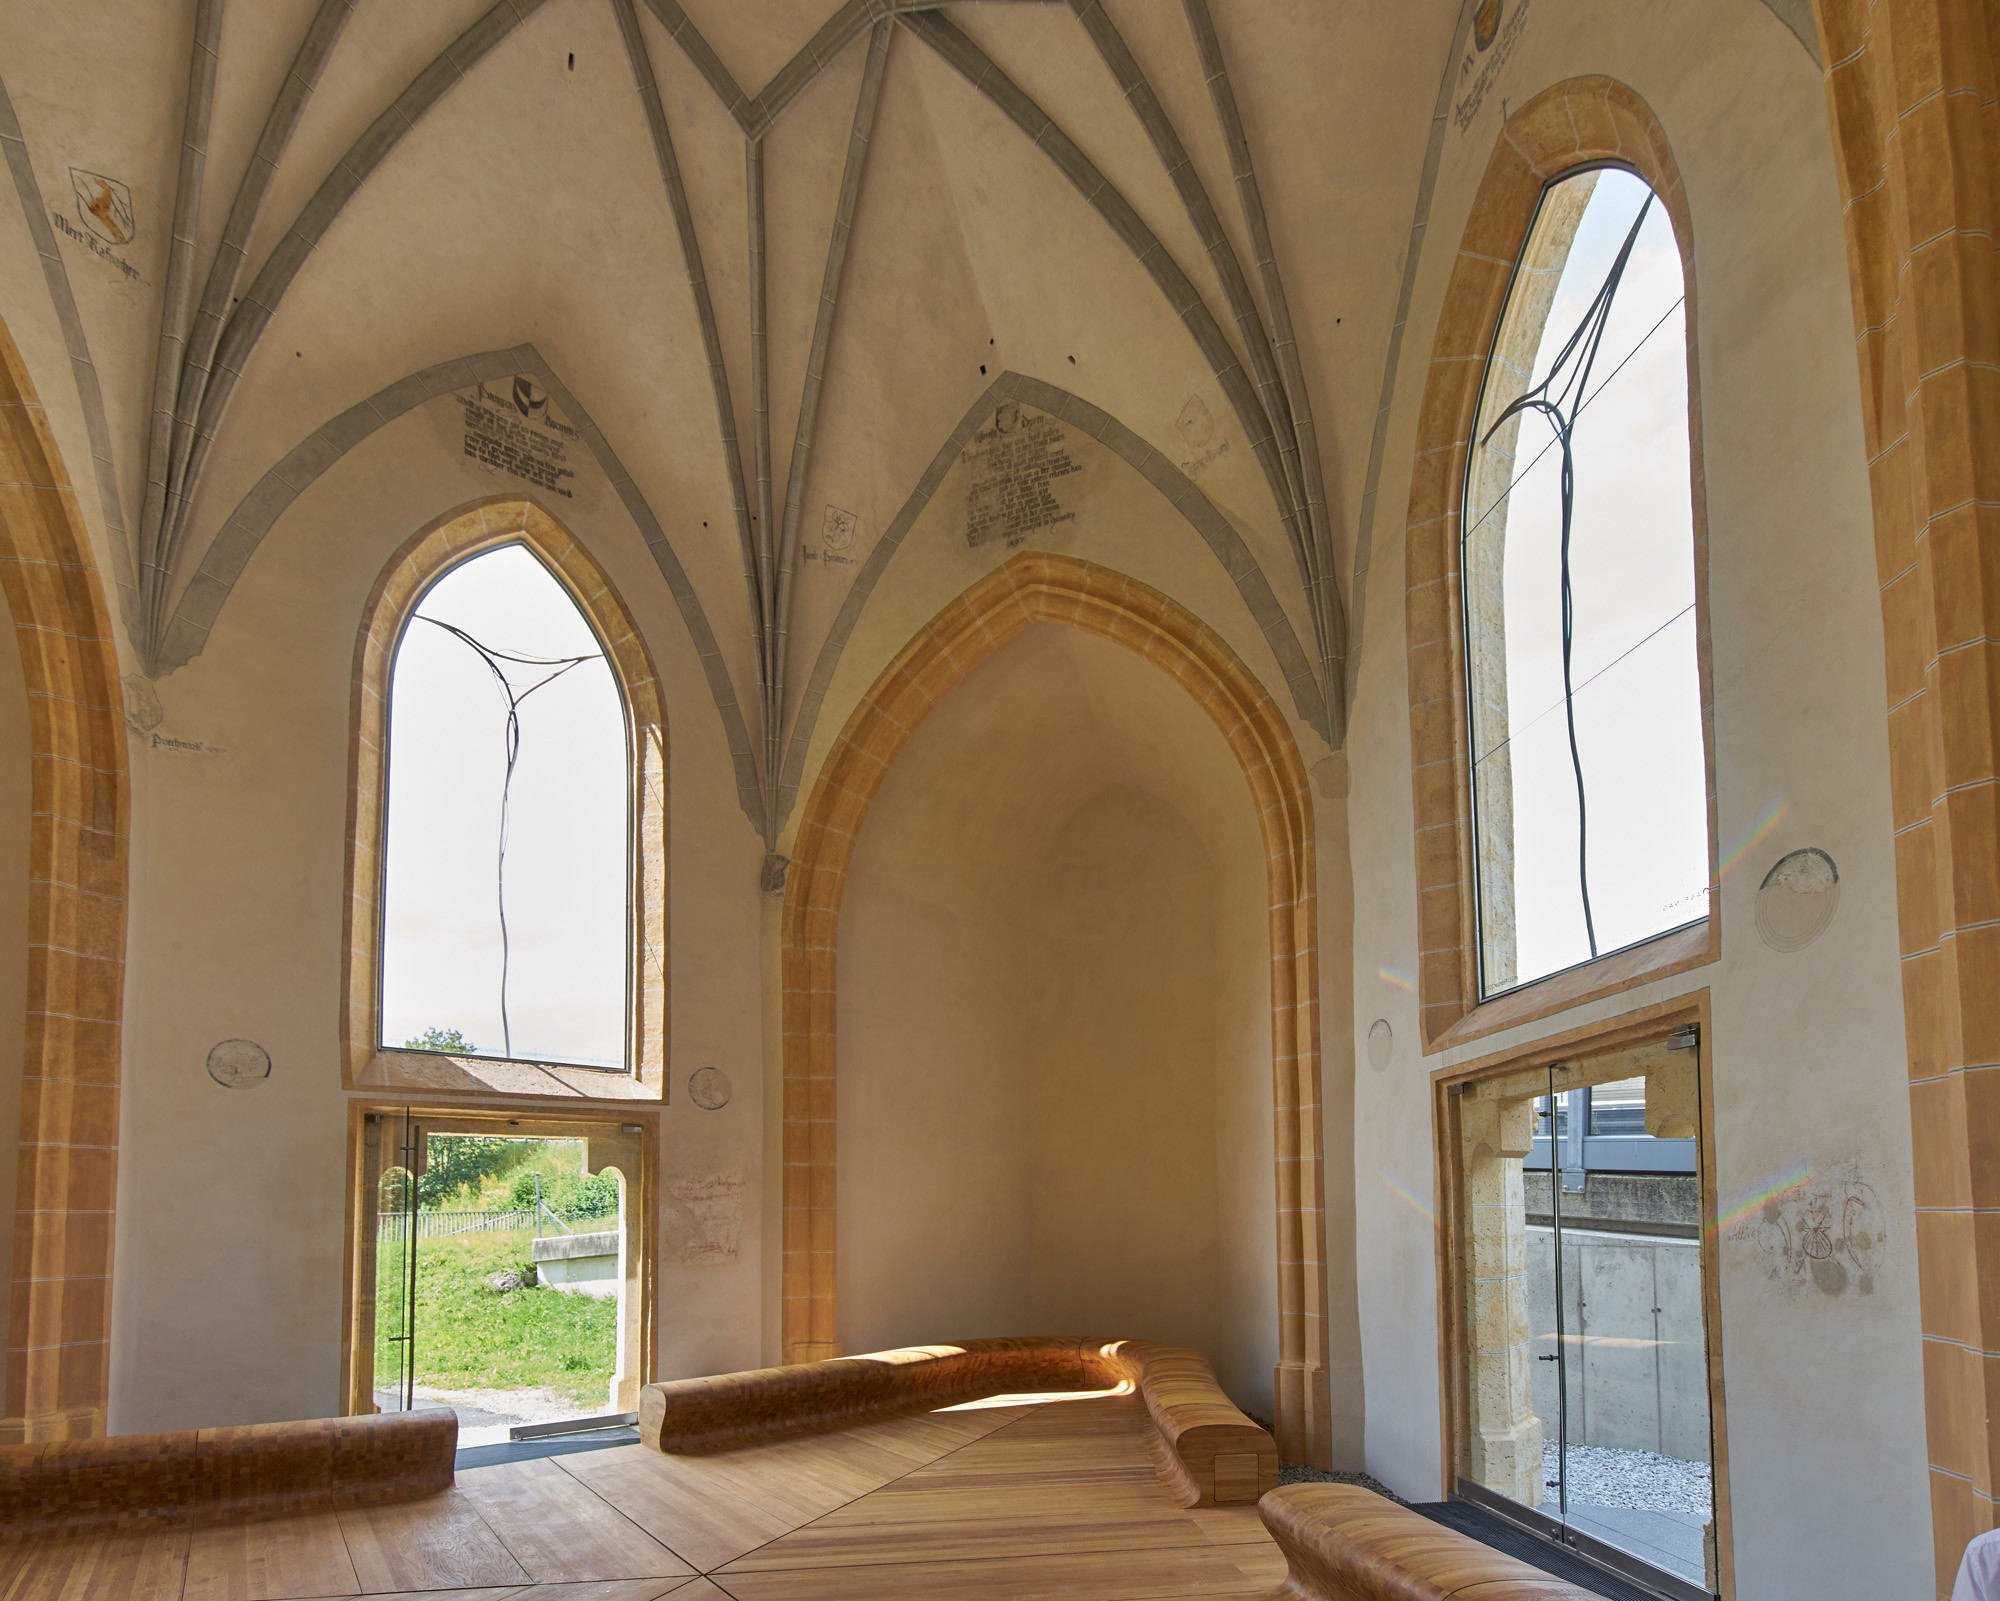 Innenraum mit zeitgenössischen Ergänzungen nach Entwürfen des Architekturbüros Stingl-Enge